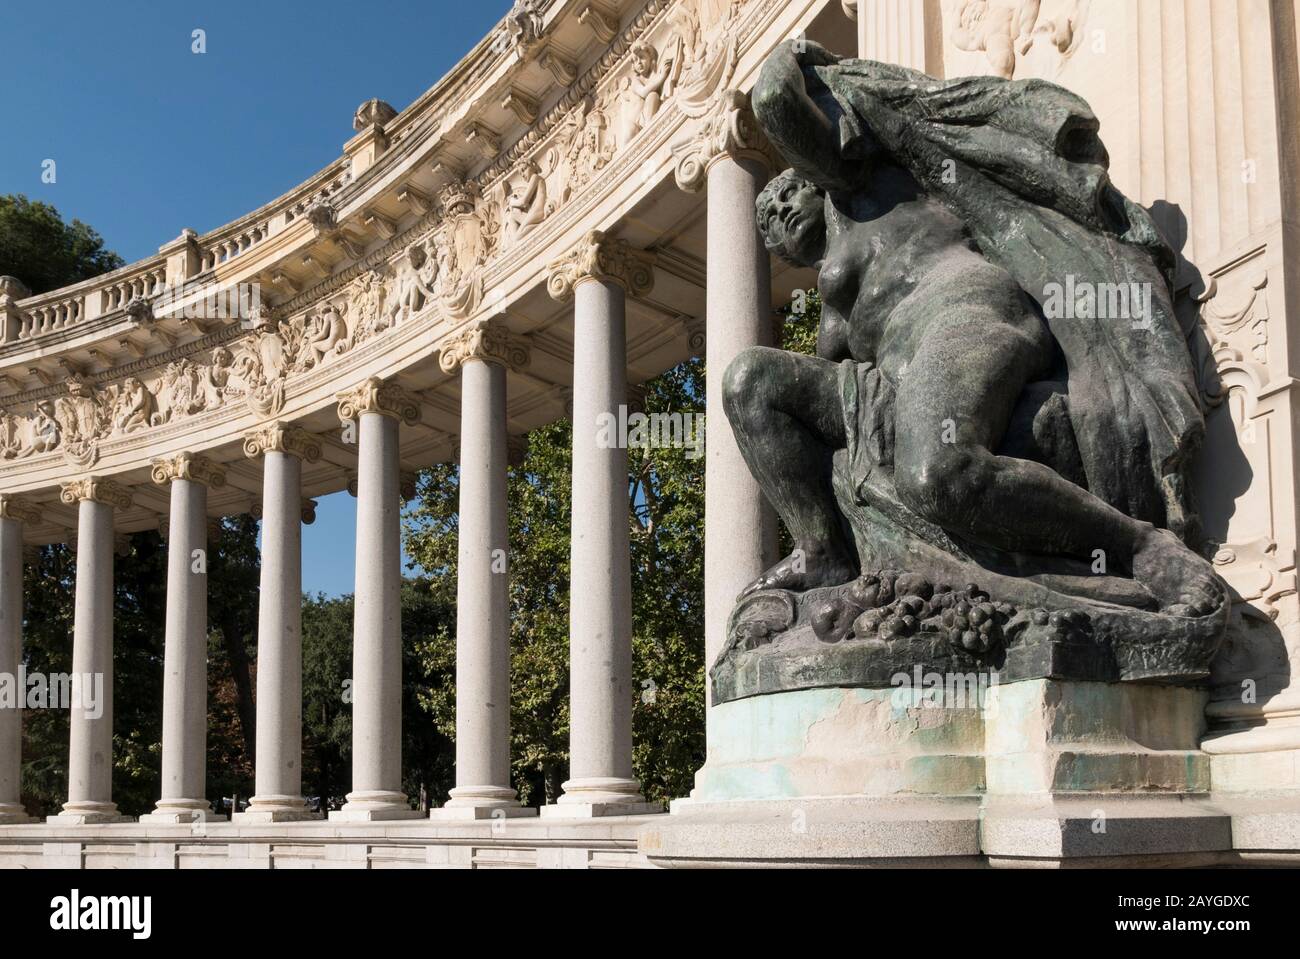 Una estatua frente a la Colonnade en el monumento Alonso XII en el Parque del Retiro, Madrid, España Foto de stock